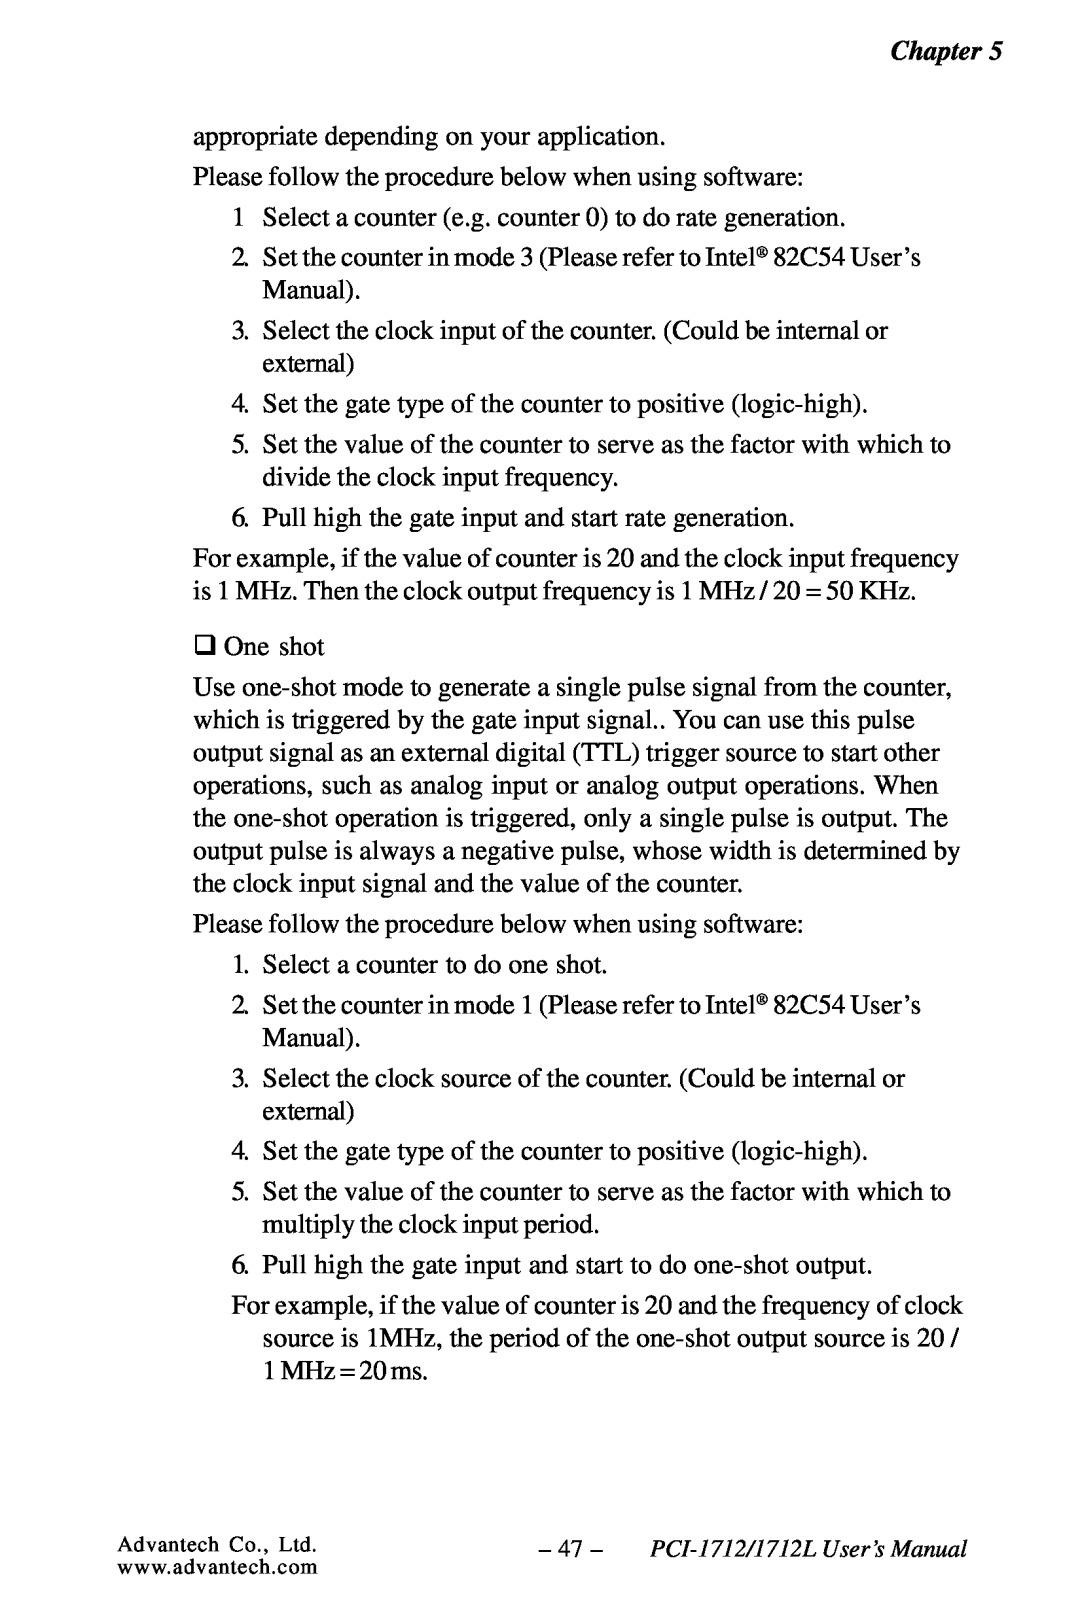 Konica Minolta PCI-1712L user manual Chapter 